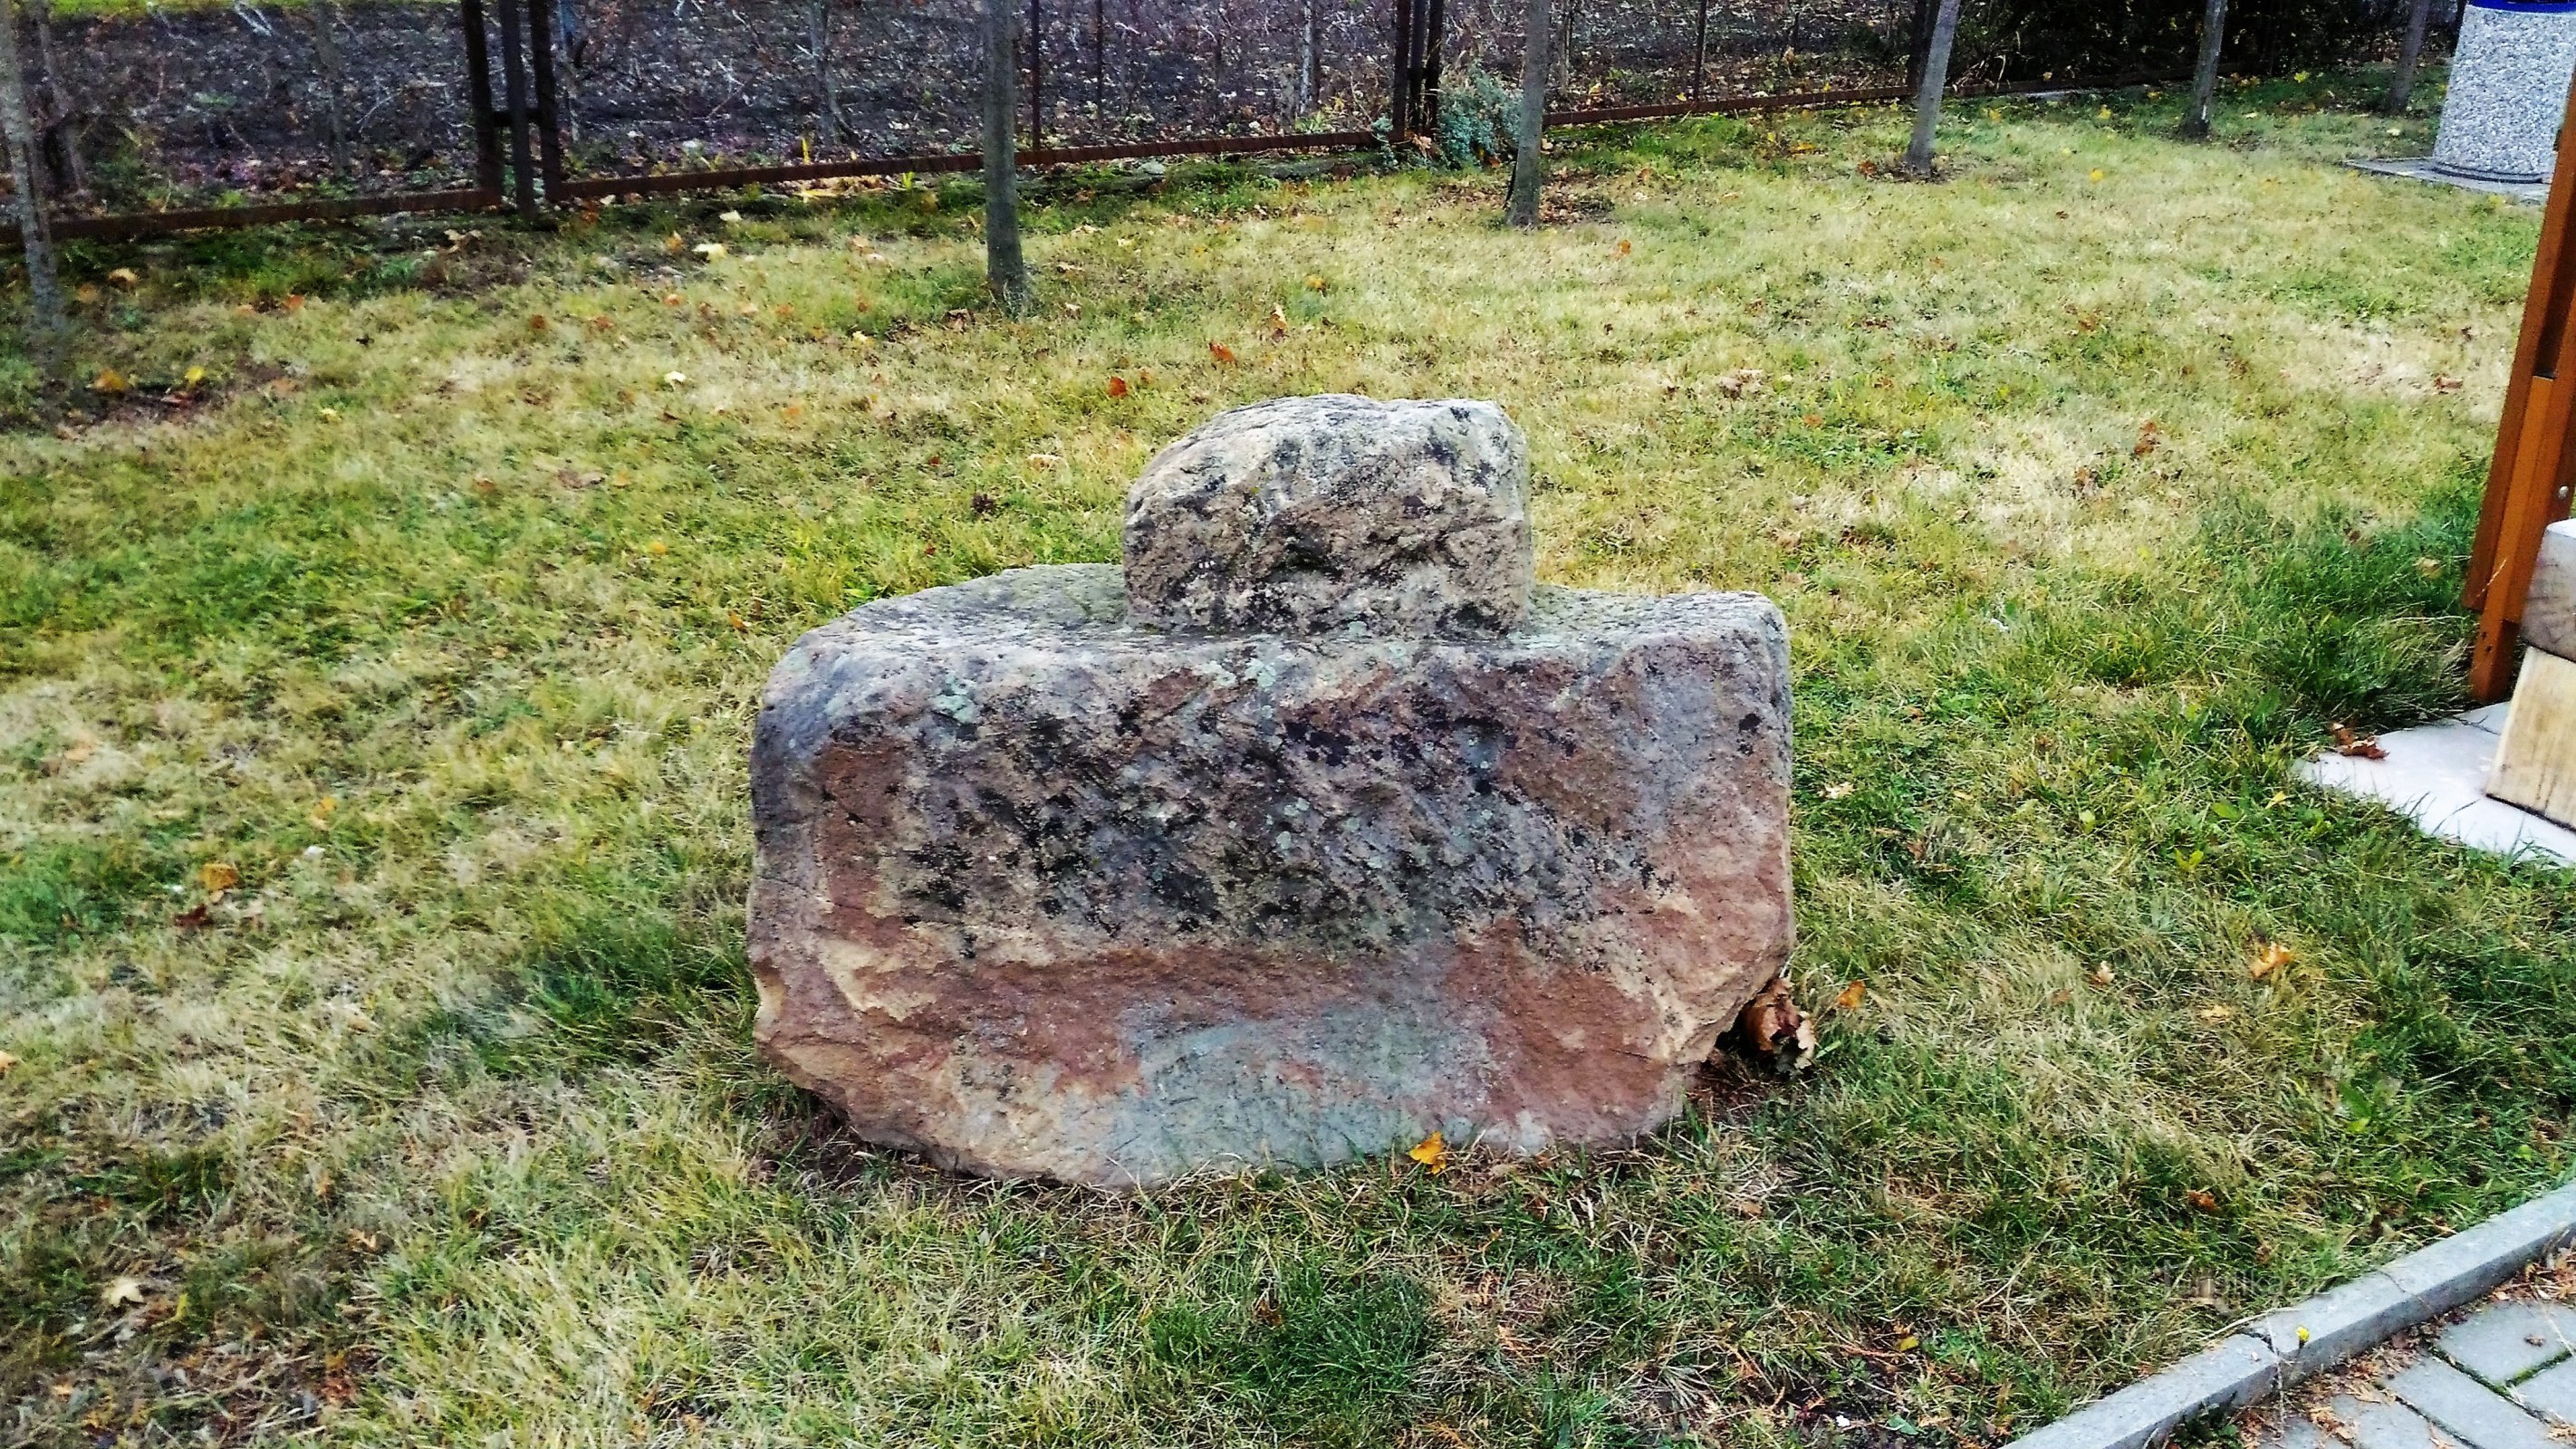 Drožkovice 的安息石。